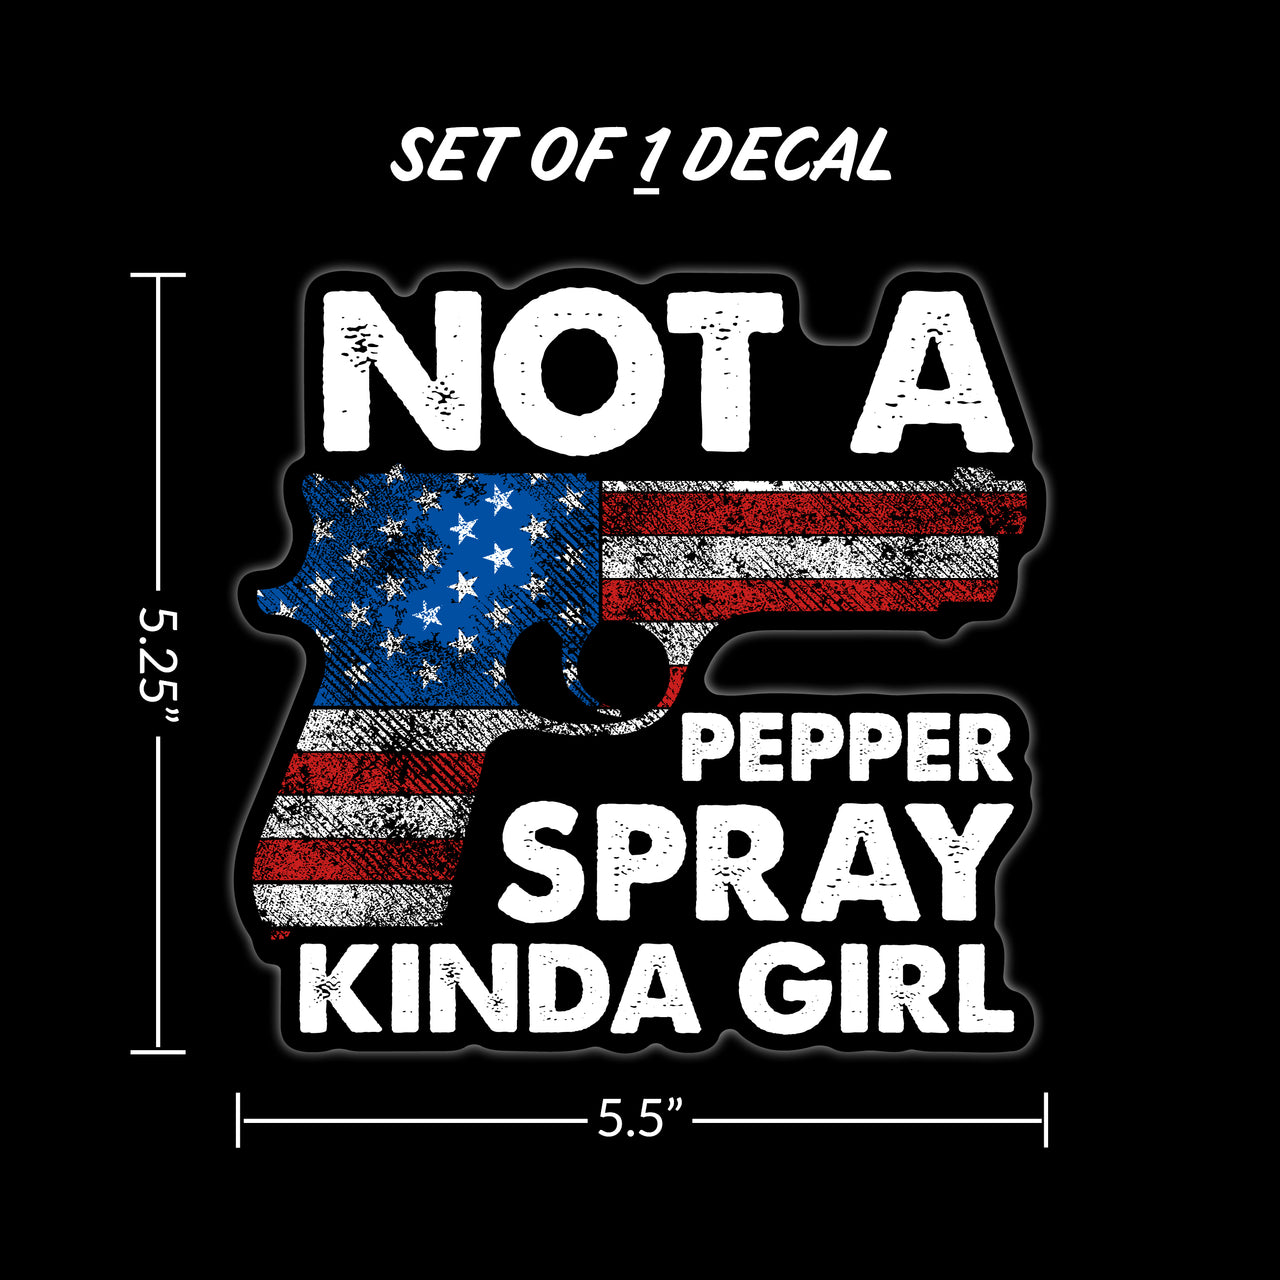 Not A Pepper Spray Kinda Girl